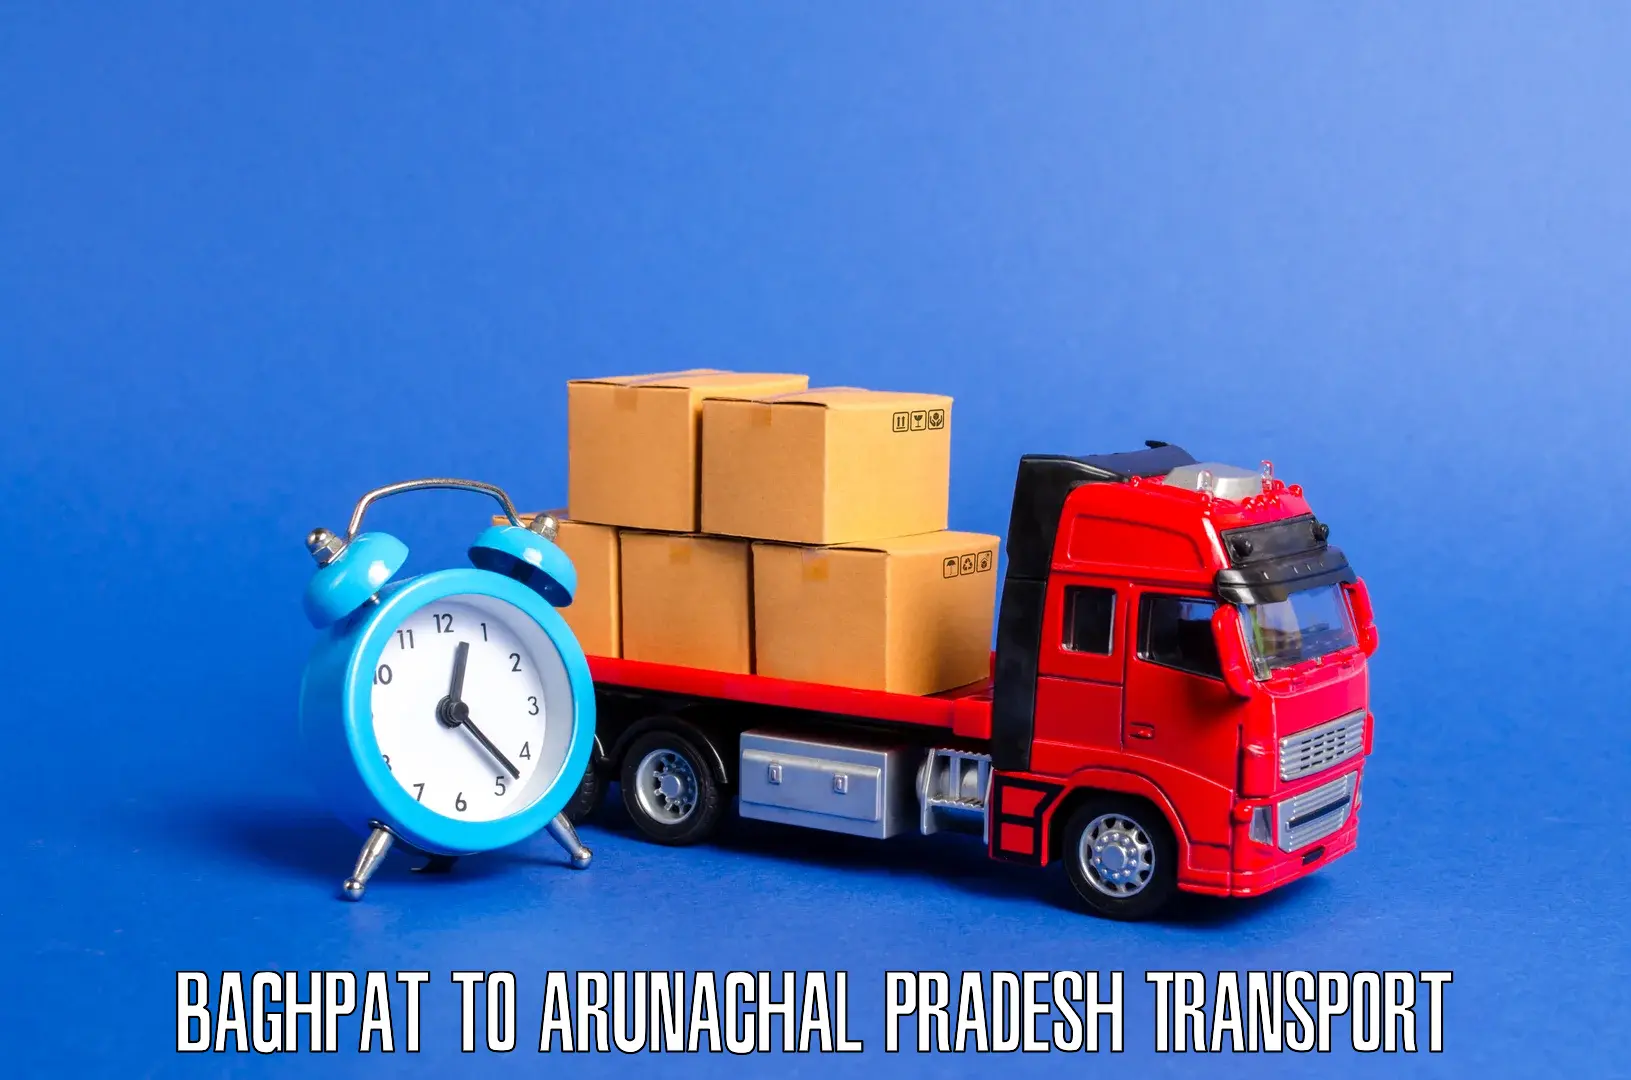 Lorry transport service Baghpat to Arunachal Pradesh